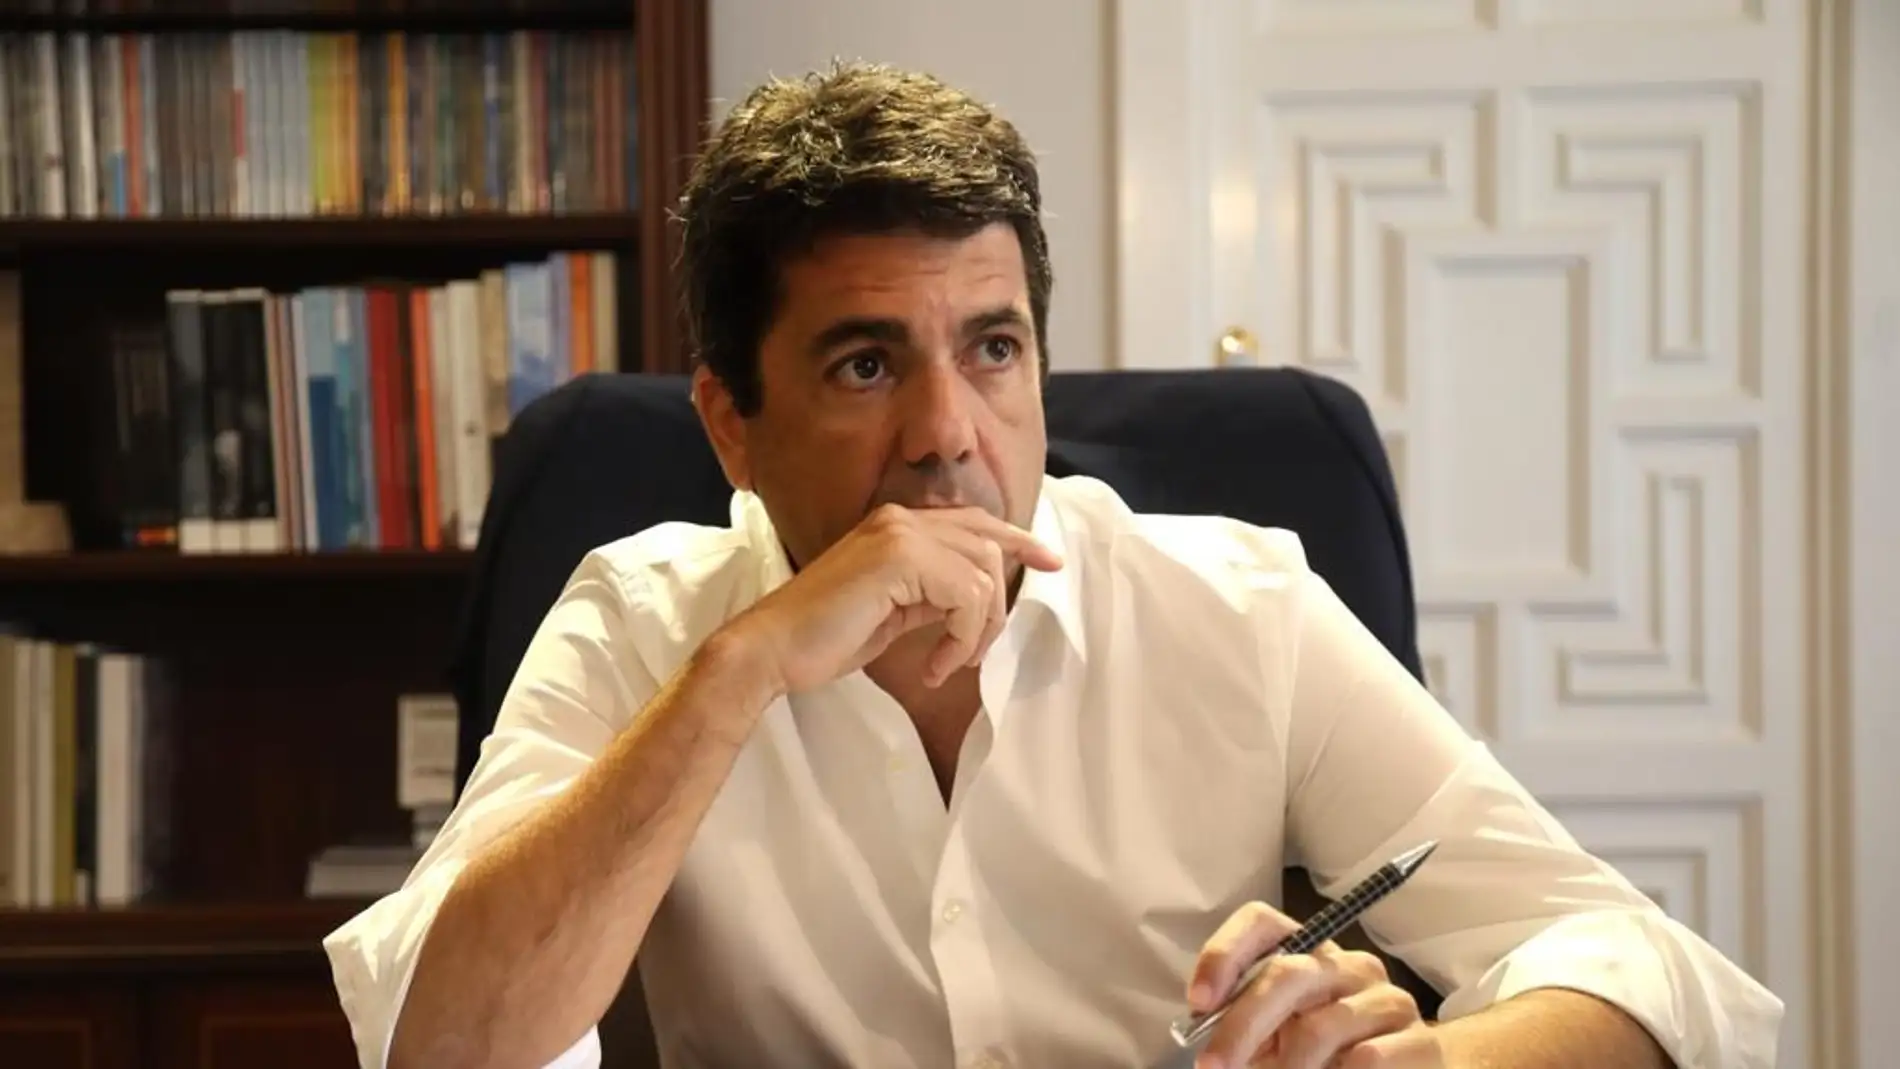 El presidente de la Diputación de Alicante, Carlos Mazón